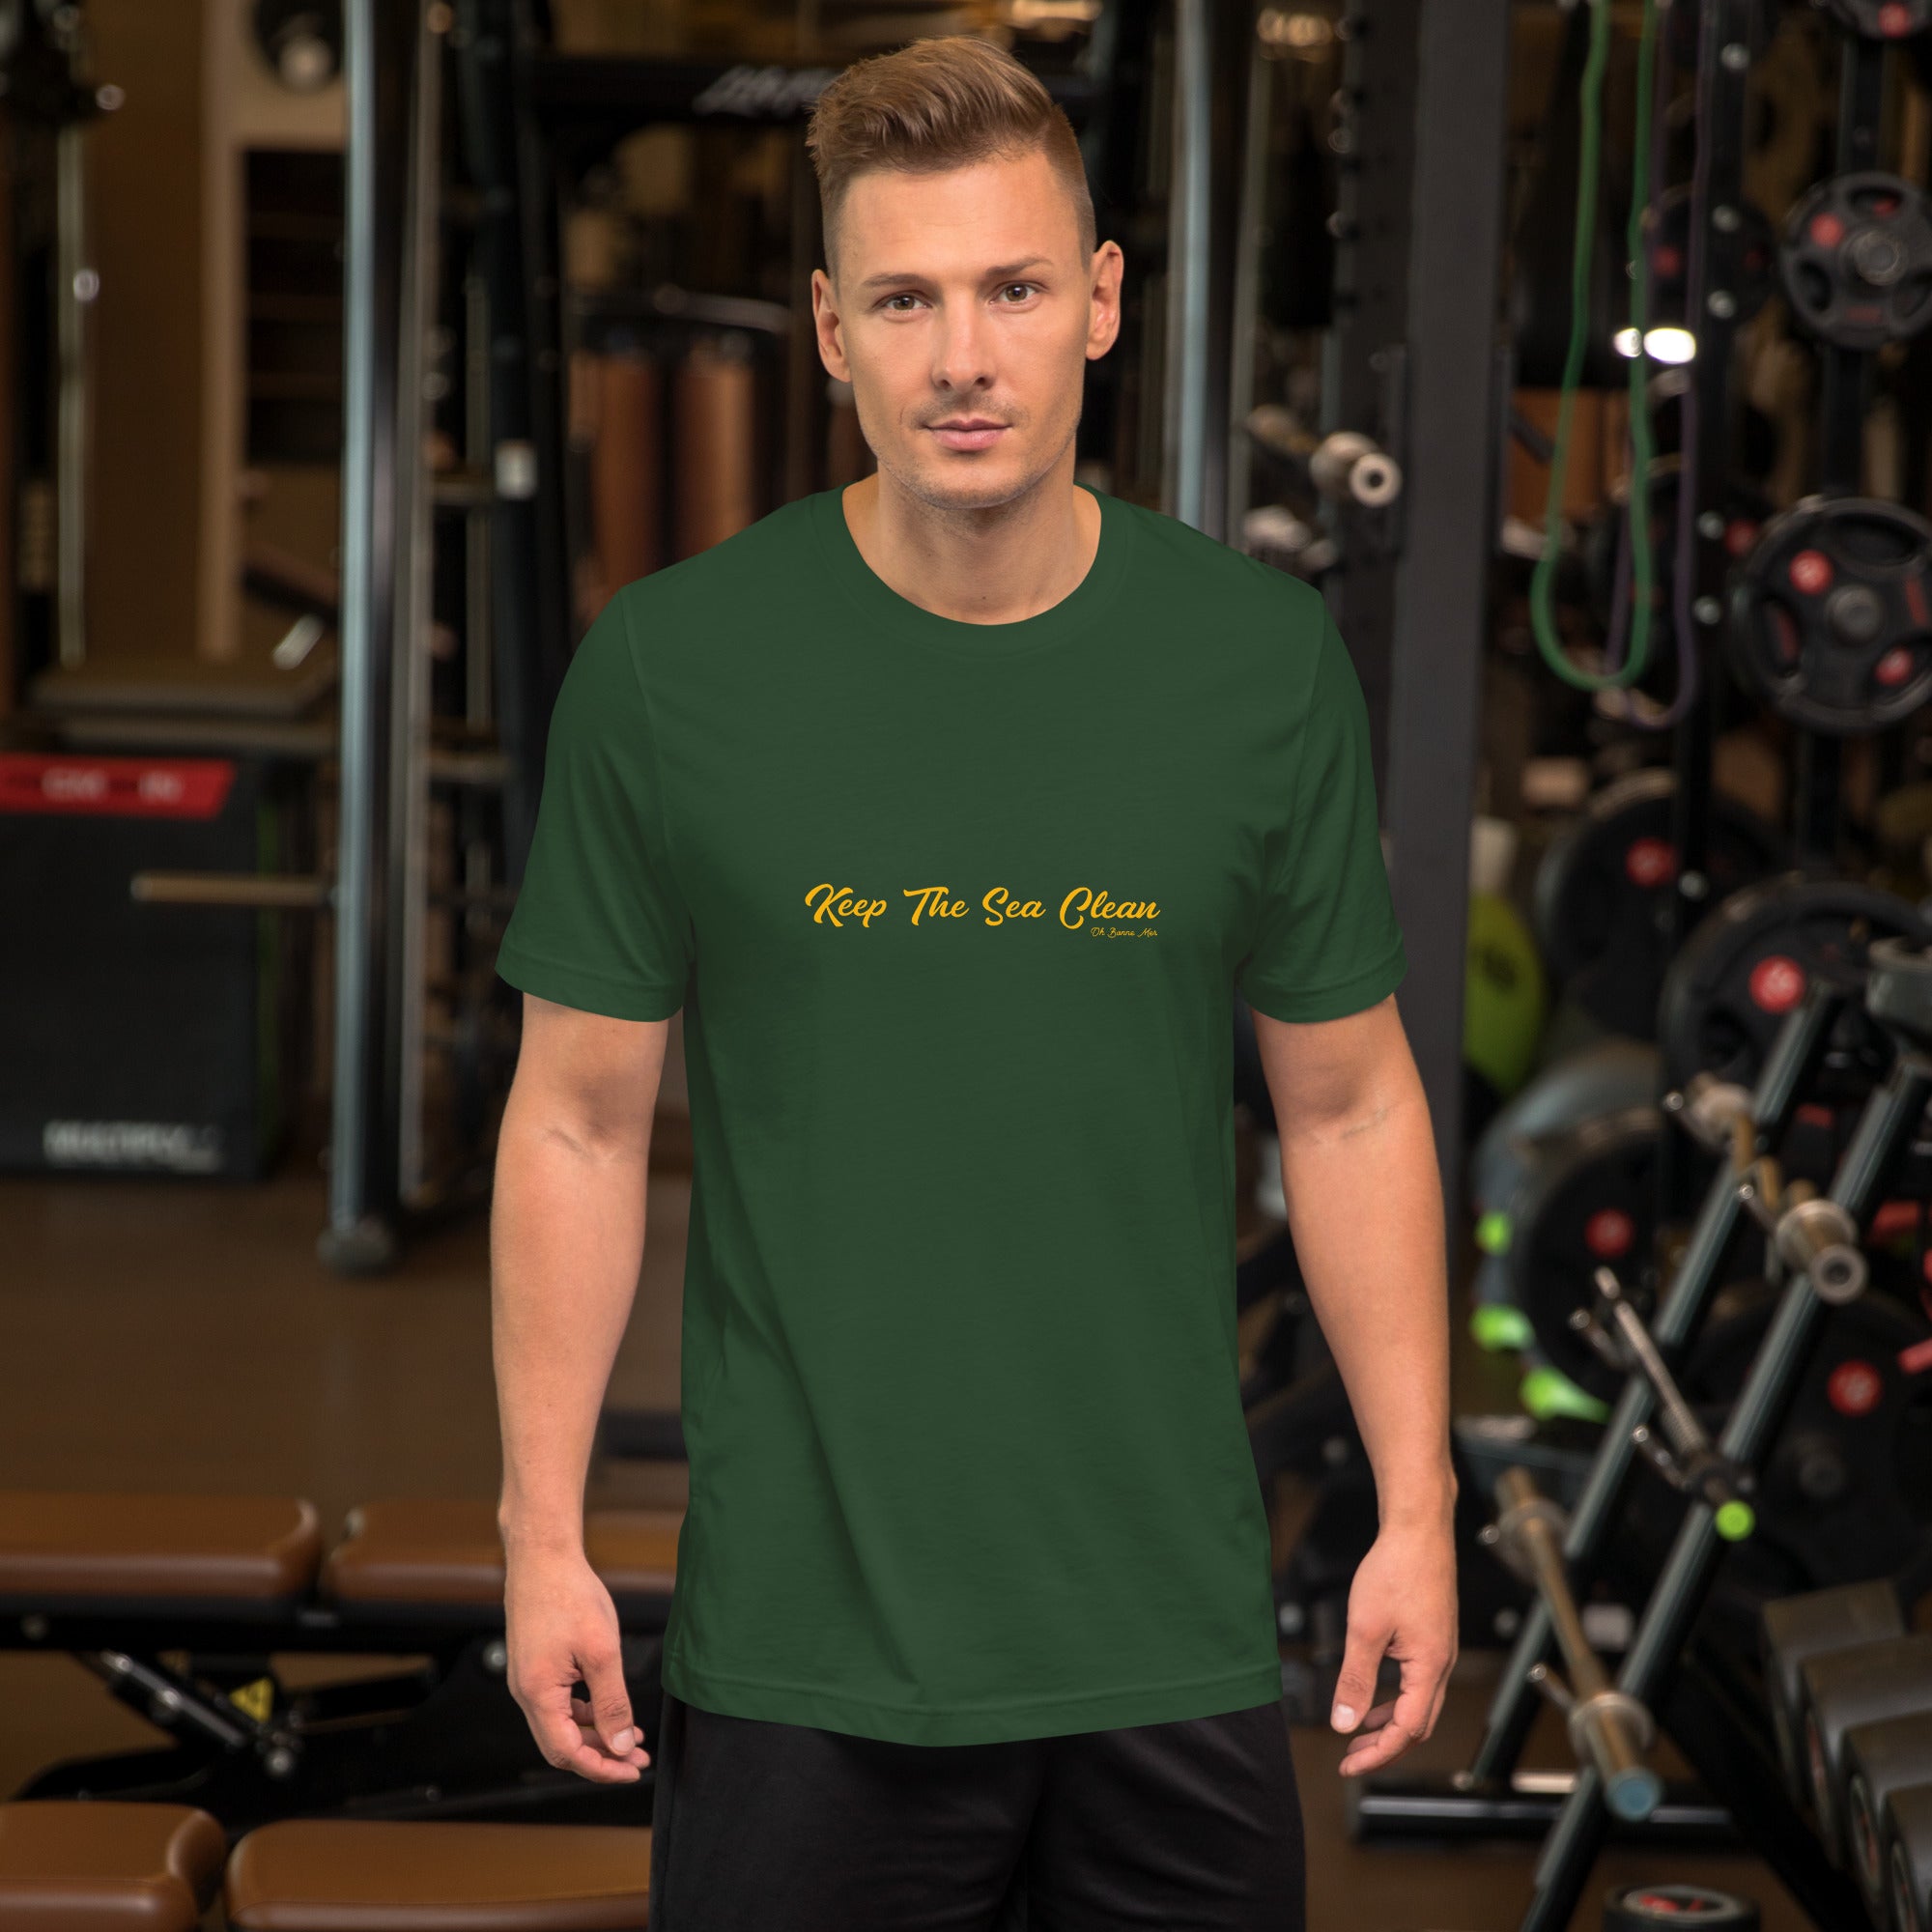 T-shirt en coton unisexe Keep The Sea Clean Gold sur verts